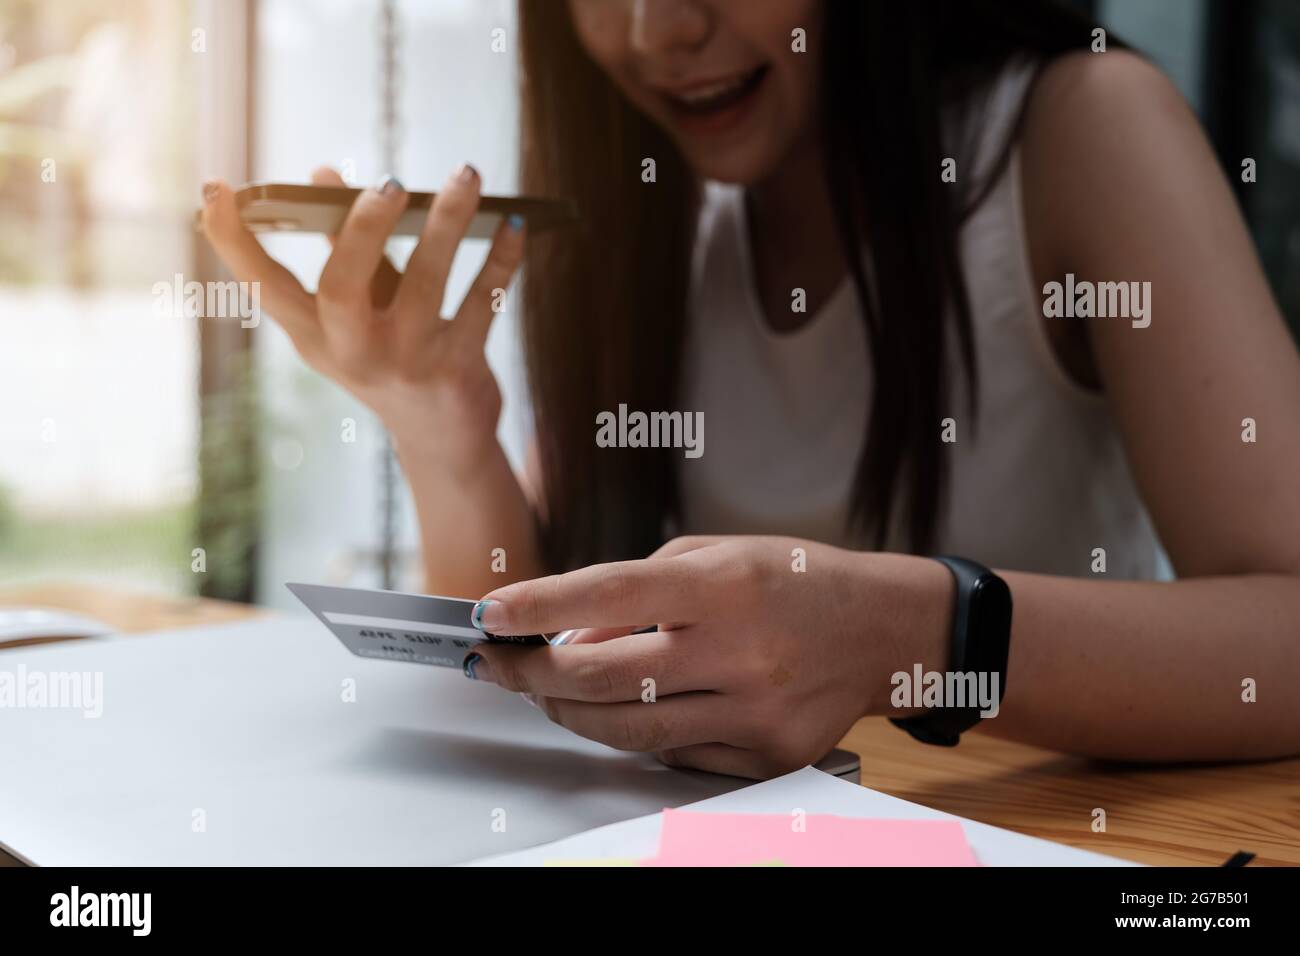 Para un problema, una mujer está hablando con un centro de contacto de la tarjeta de crédito. Foto de stock